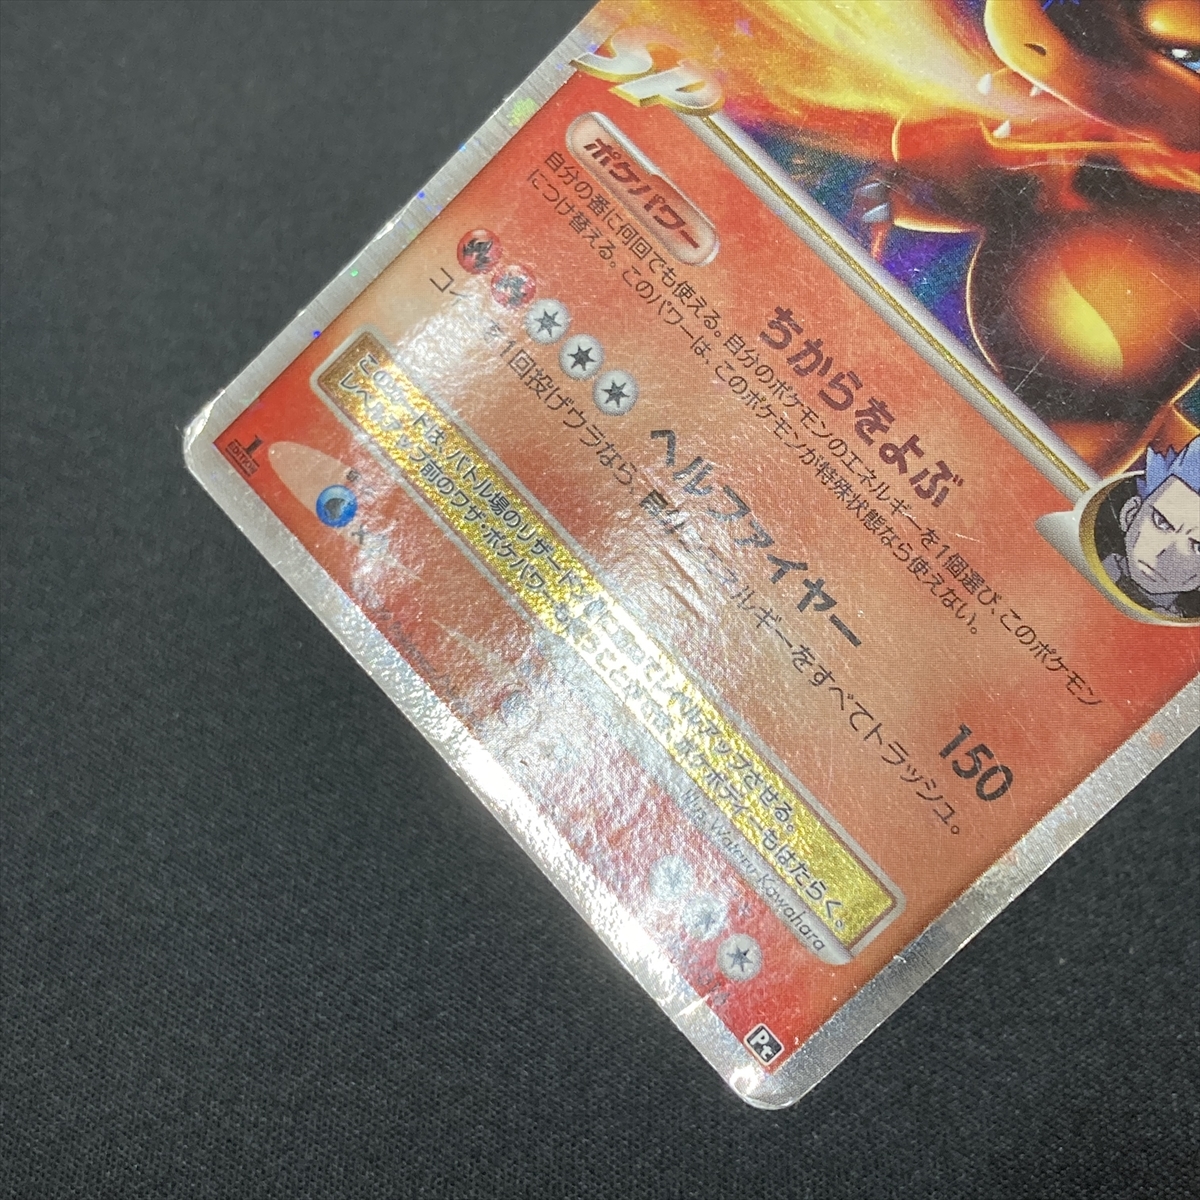 Charizard G LV.X #002/016 Pt Pokemon Card 1st Edition Holo Japanese 2009 ポケモン カード リザードン レベルX ポケカ ホロ 210629-3_画像6